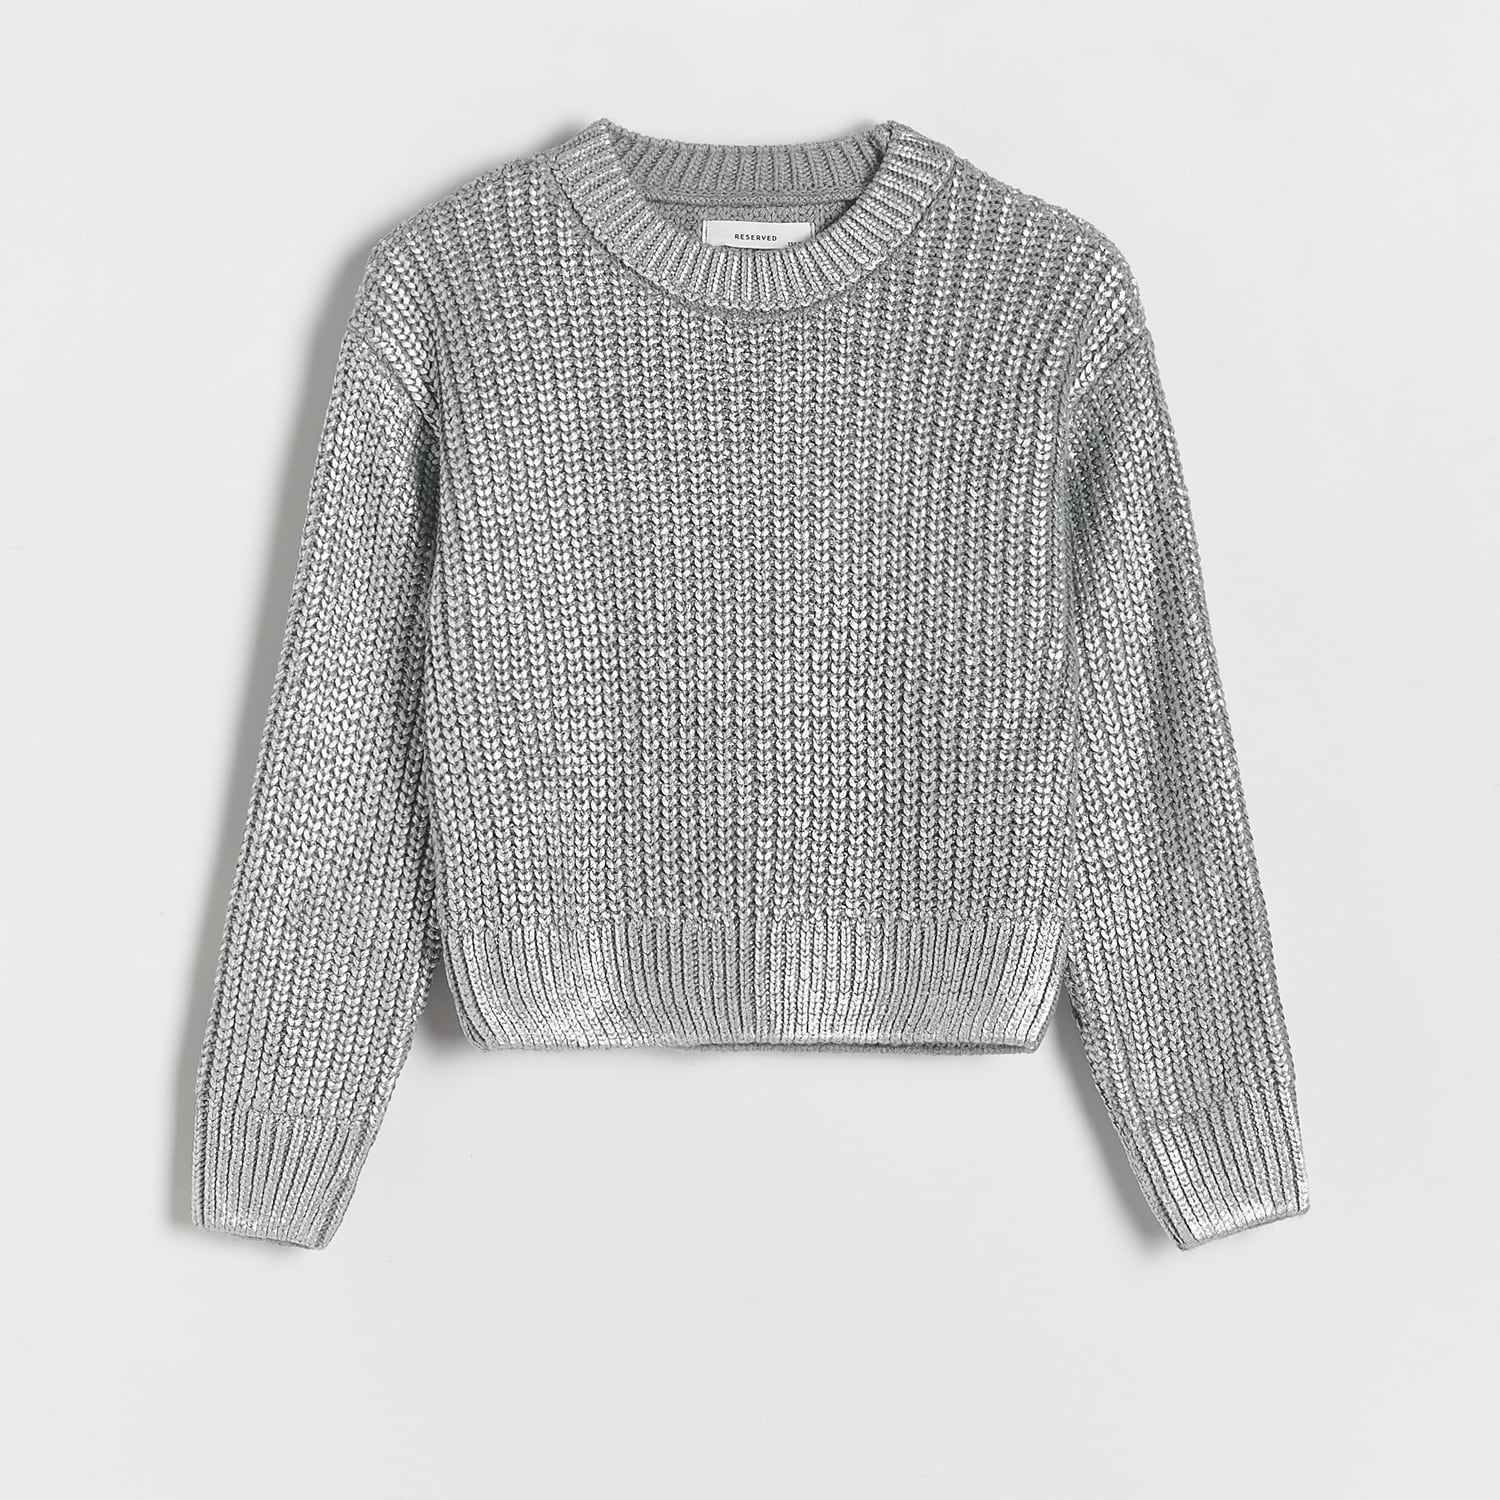 Reserved - Girls` sweater - Argintiu